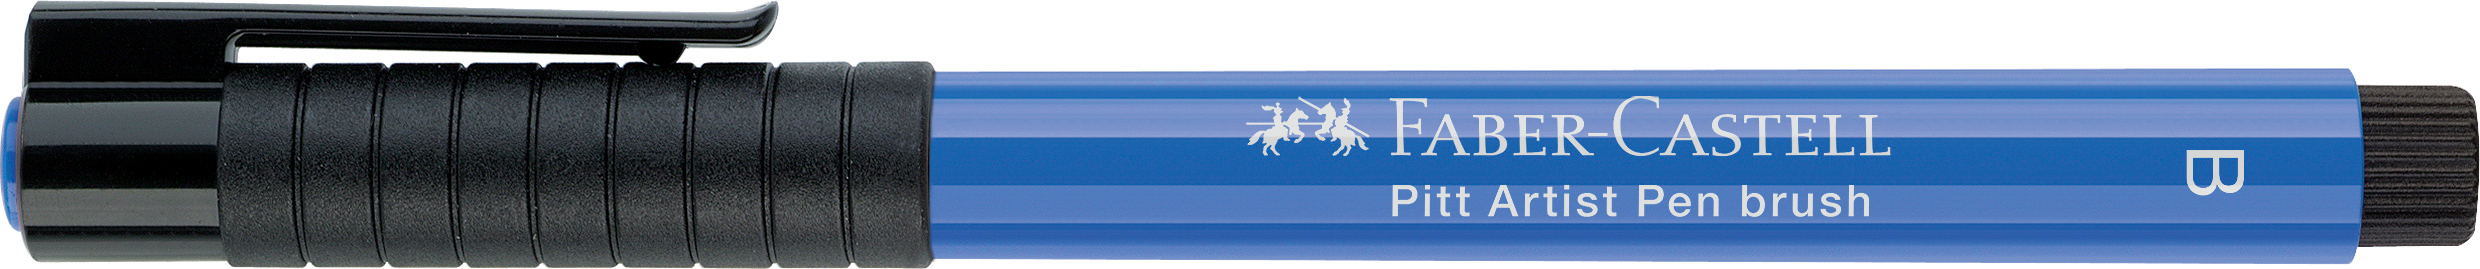 FABER-CASTELL Pitt Artist Pen Brush 2.5mm 167443 cobalt blue cobalt blue